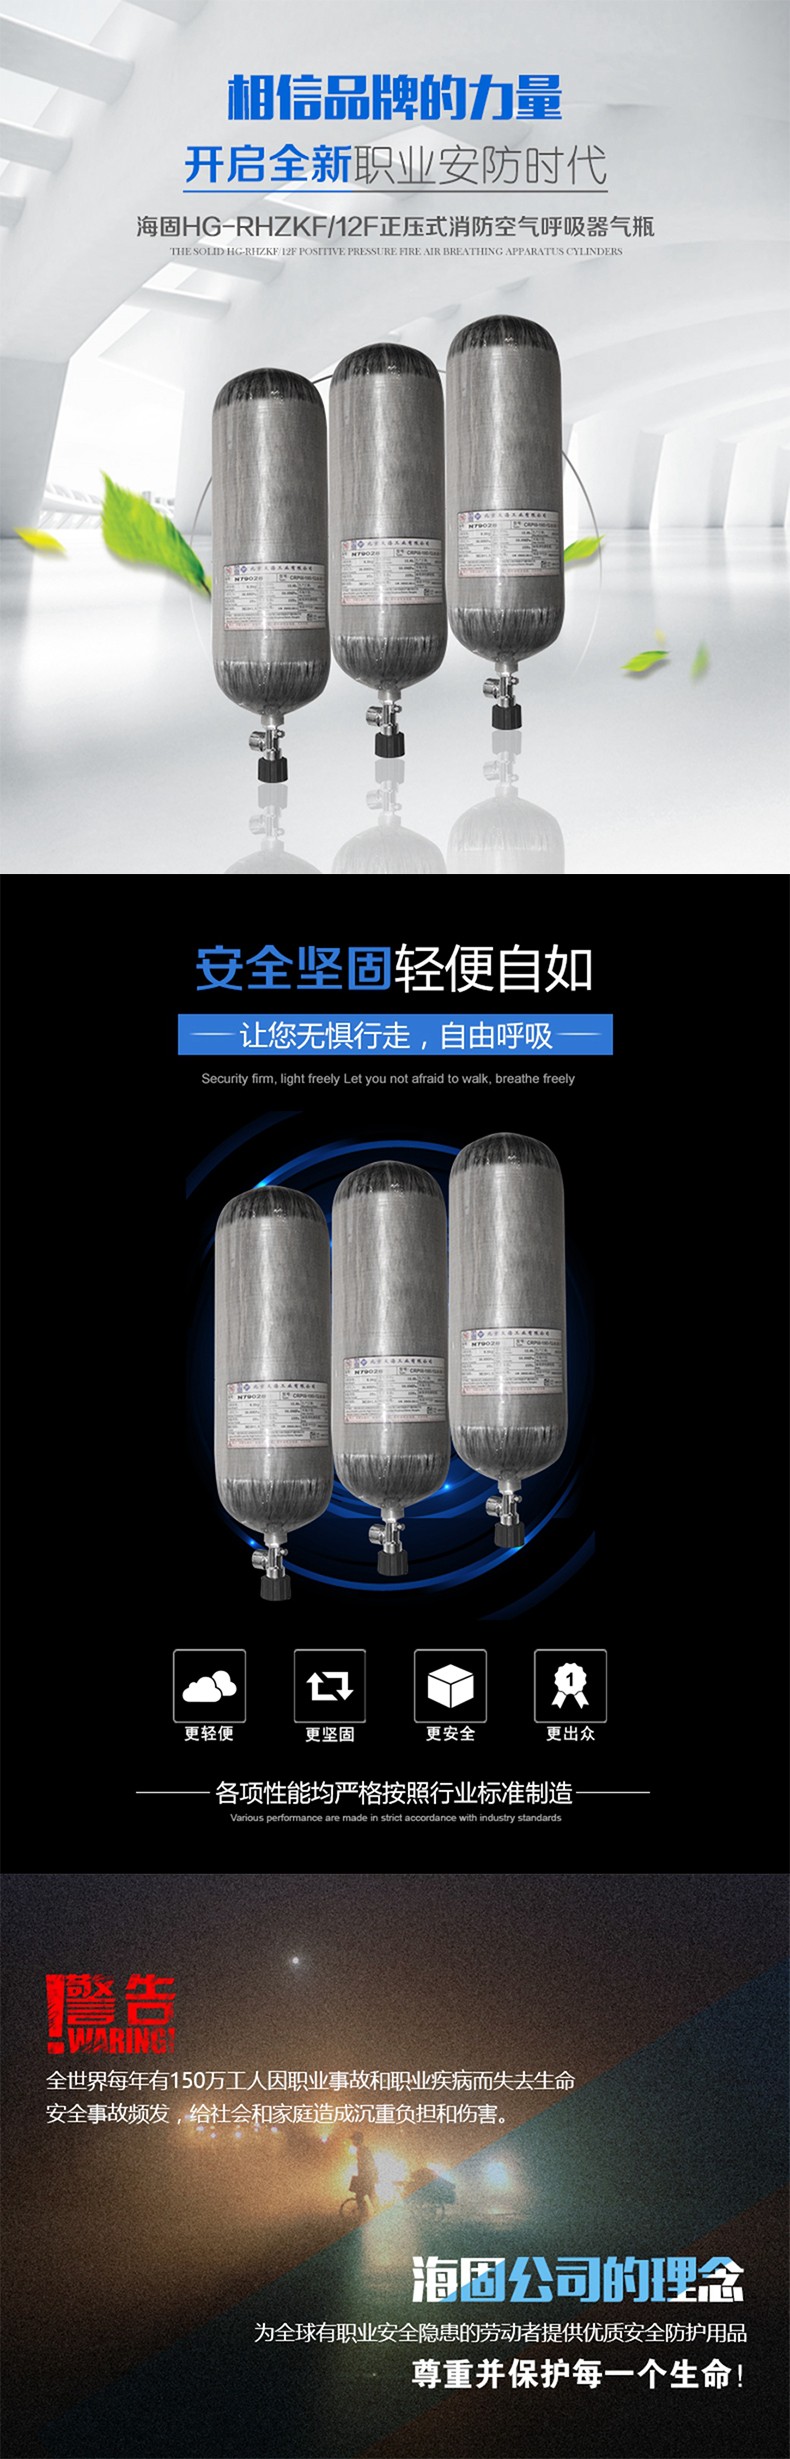 海固HG-RHZKF/12F正压式空气呼吸器碳纤维复合气瓶图片1